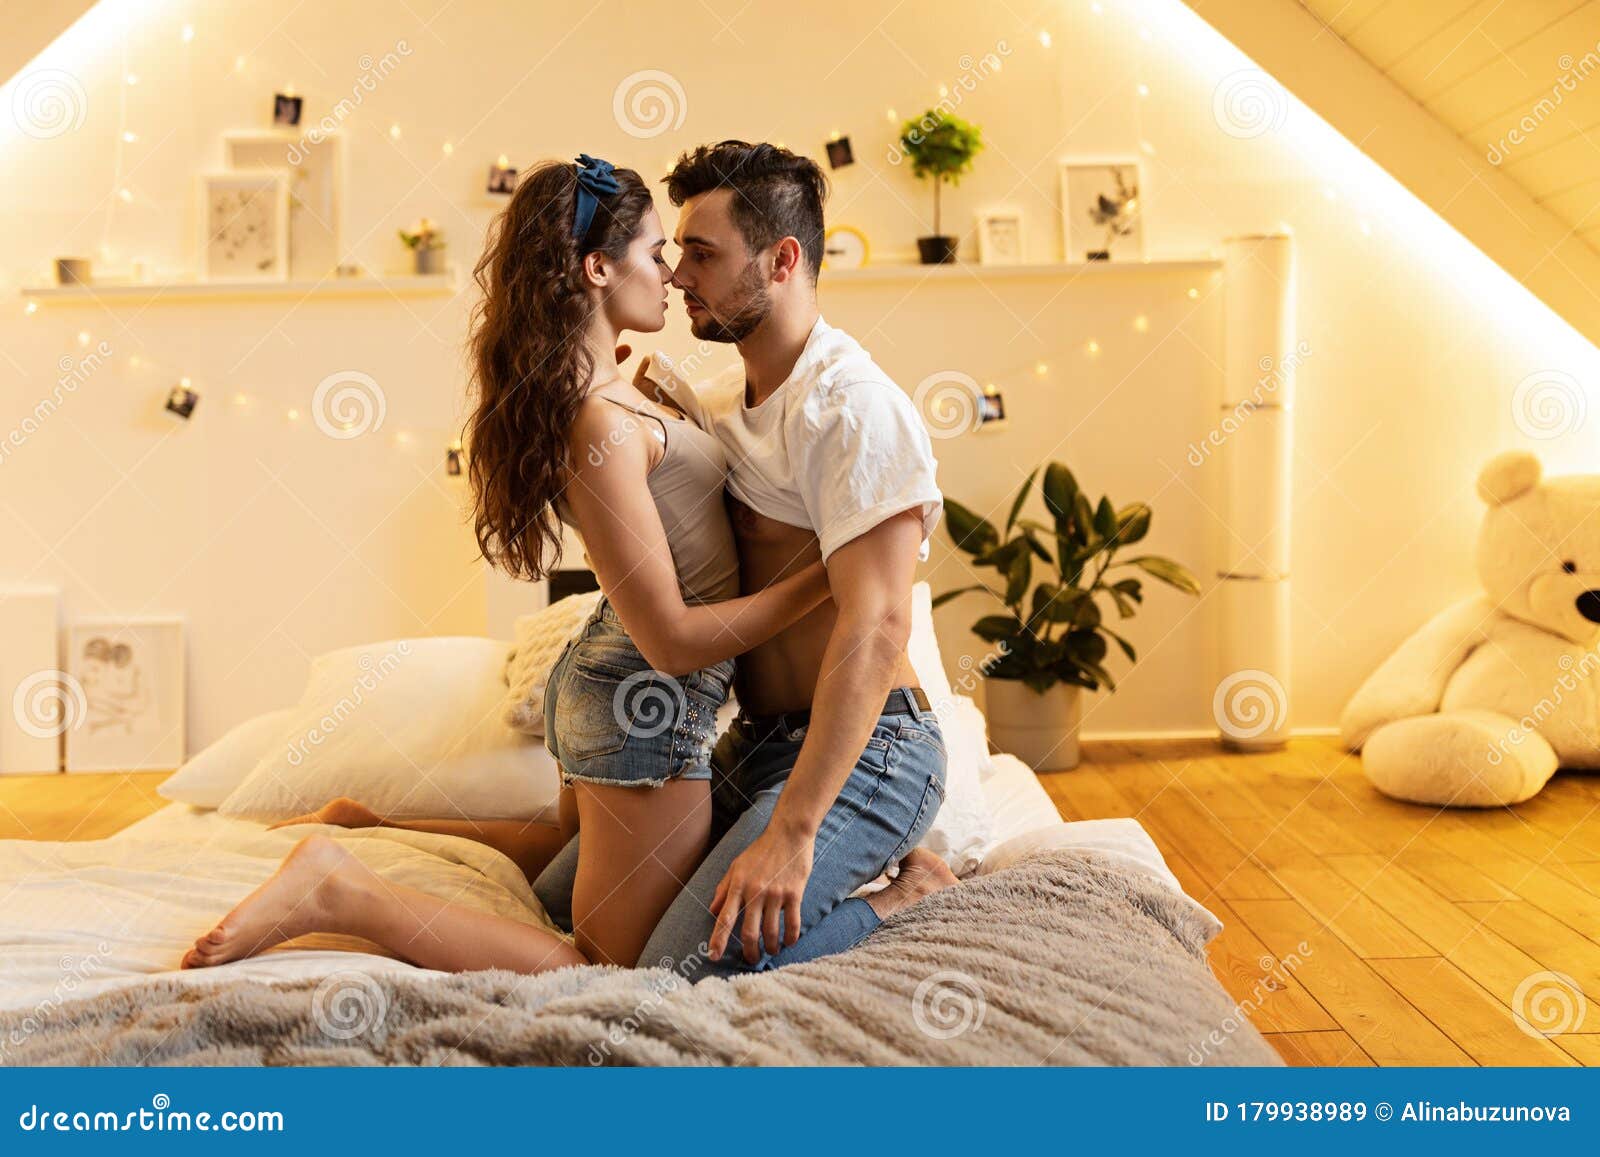 Молодая парочка занимается любовью в спальне